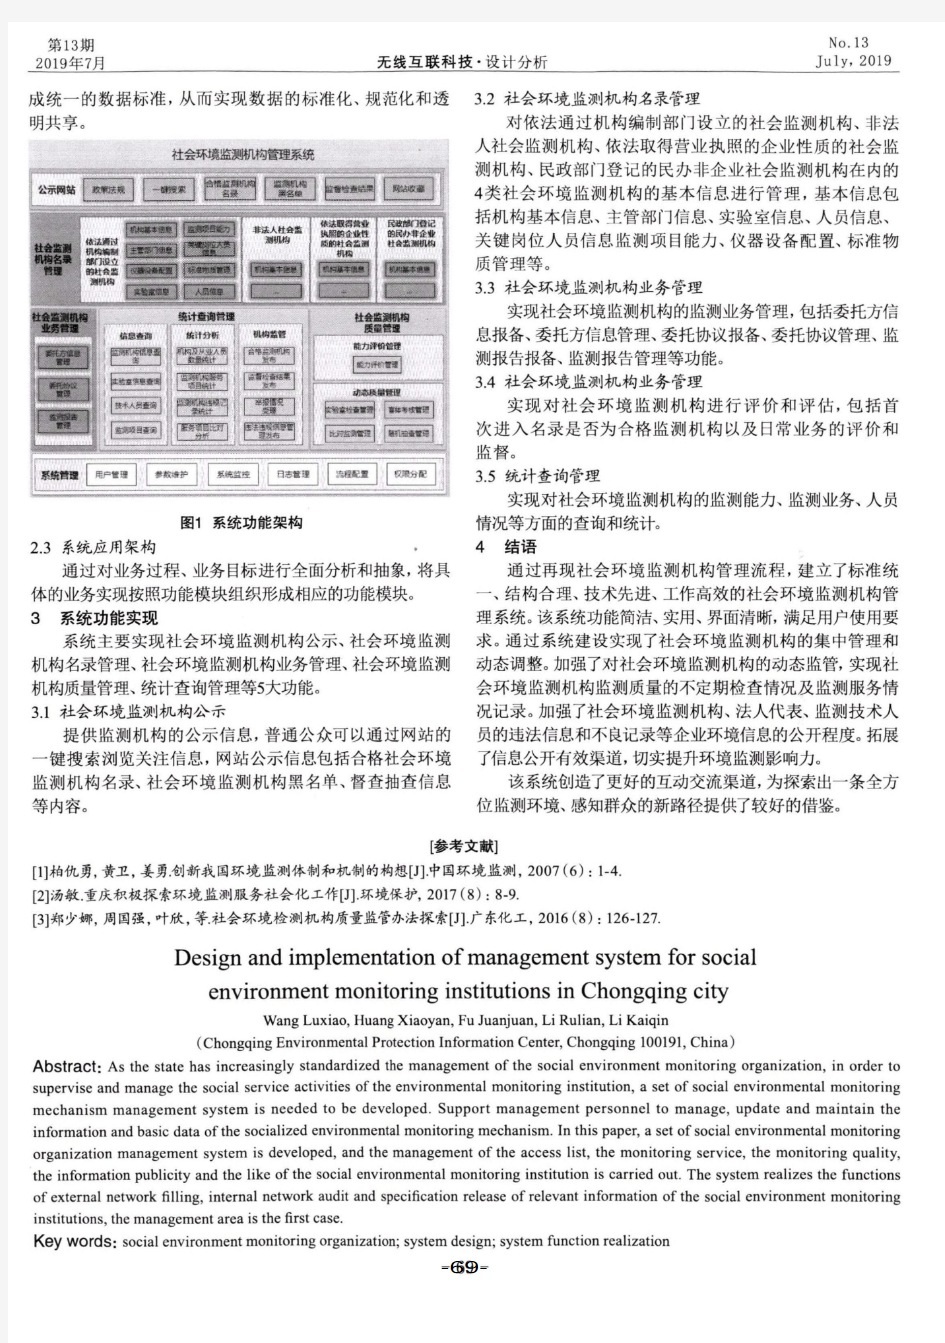 重庆市社会环境监测机构管理系统设计与实现